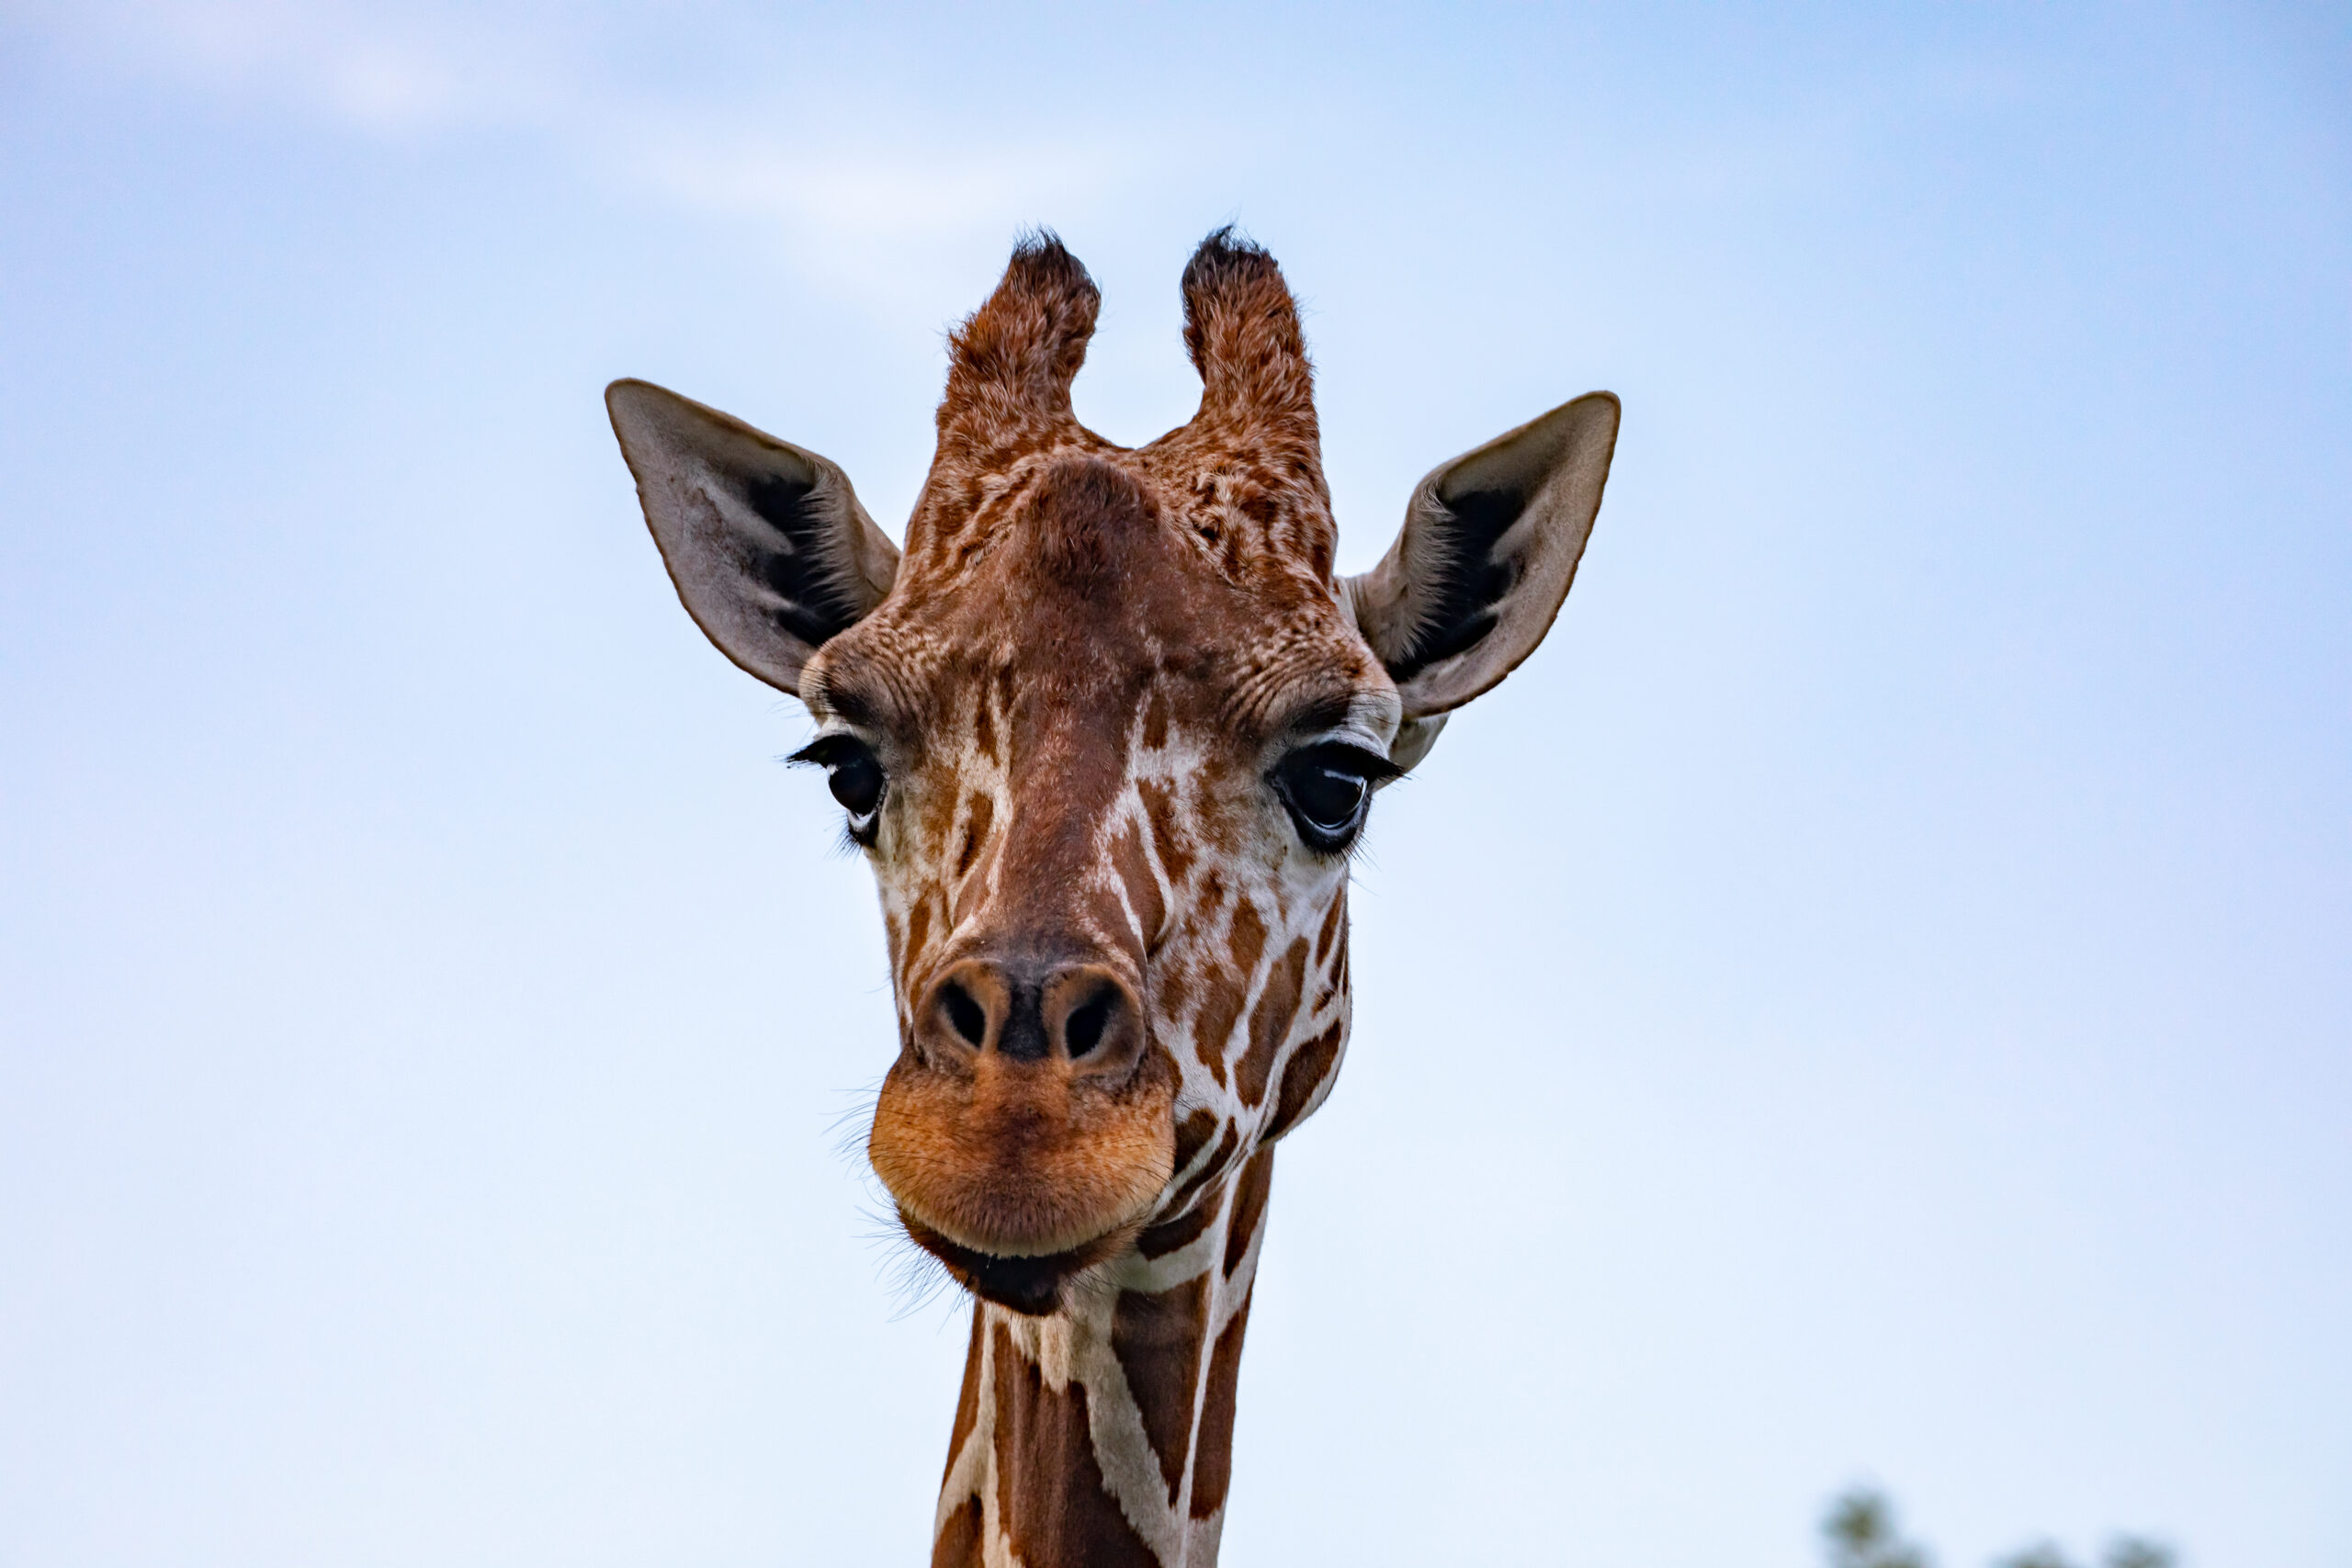 tallest giraffe ever recorded